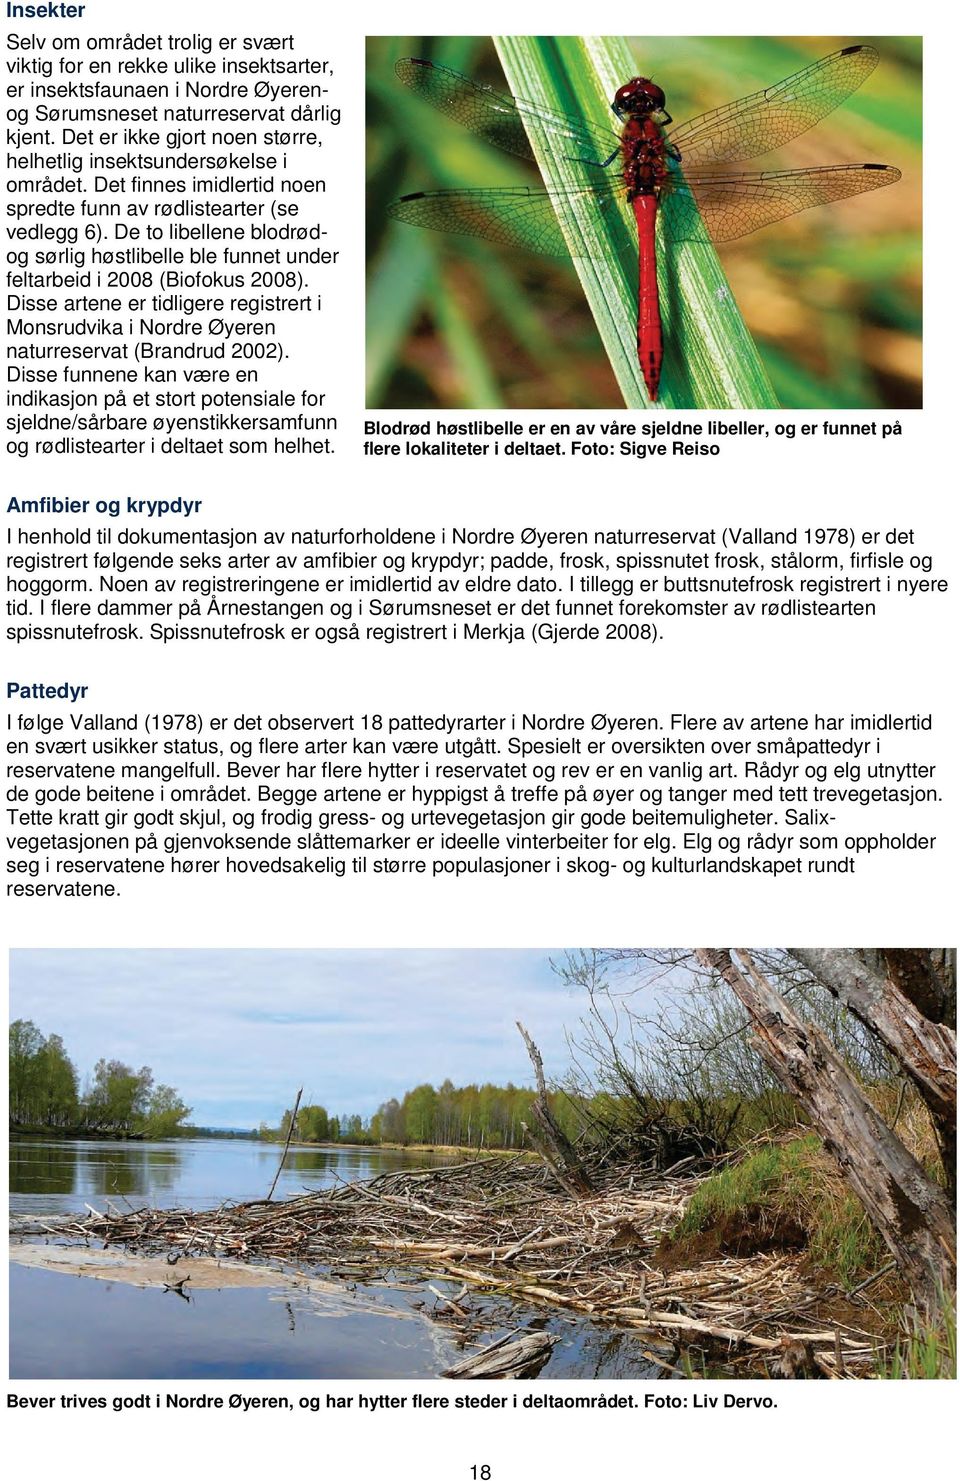 De to libellene blodrødog sørlig høstlibelle ble funnet under feltarbeid i 2008 (Biofokus 2008). Disse artene er tidligere registrert i Monsrudvika i Nordre Øyeren naturreservat (Brandrud 2002).